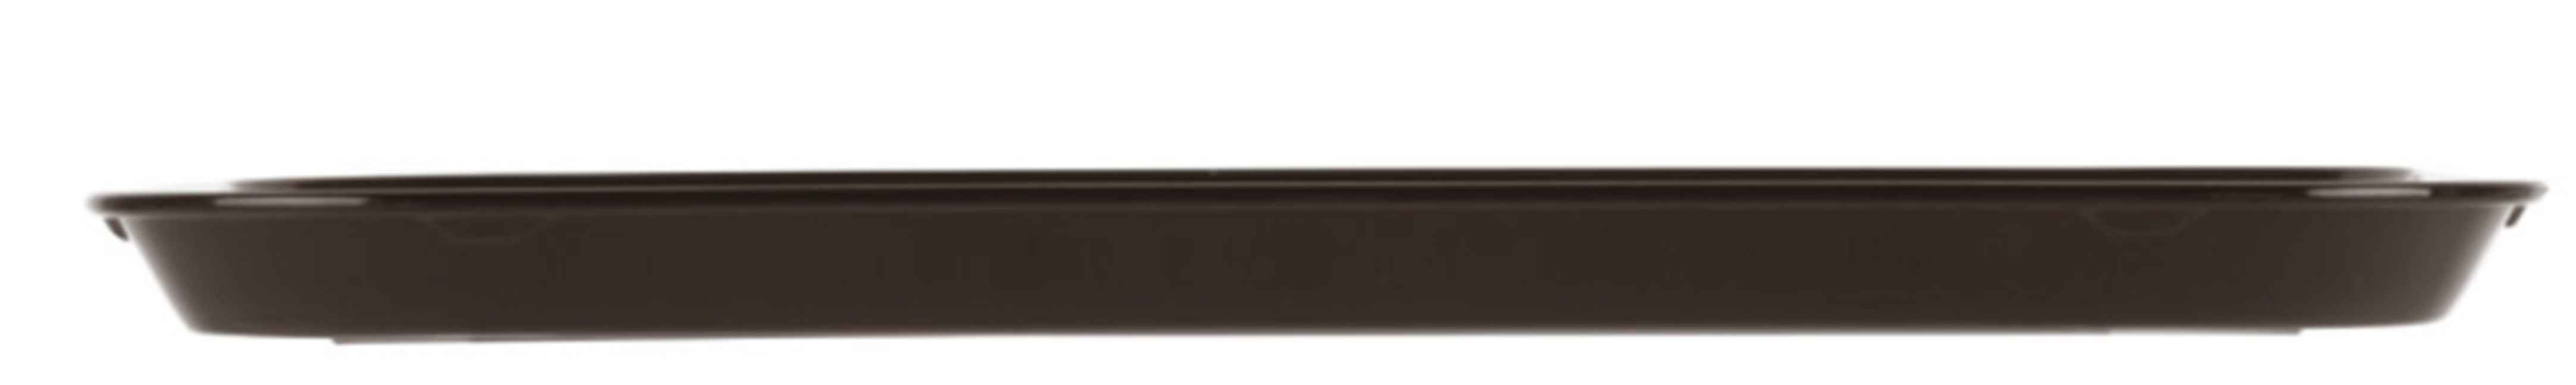 Bandeja antideslizante rectangular polipropileno 27 x 34.5cm castaño Cambro